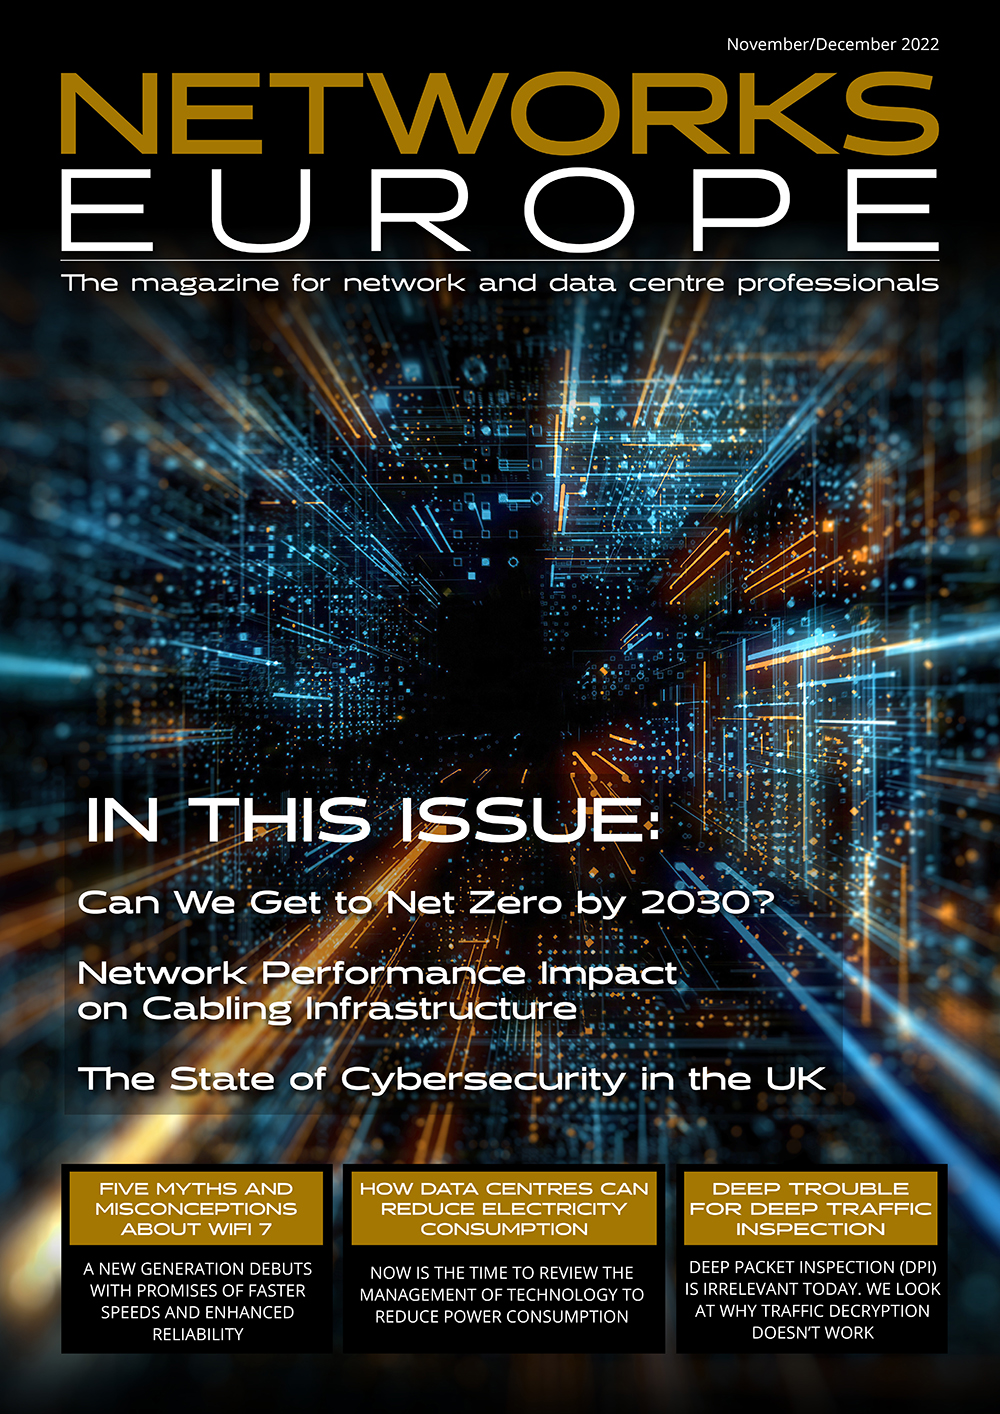 Networks Europe - November/December 2022 Issue